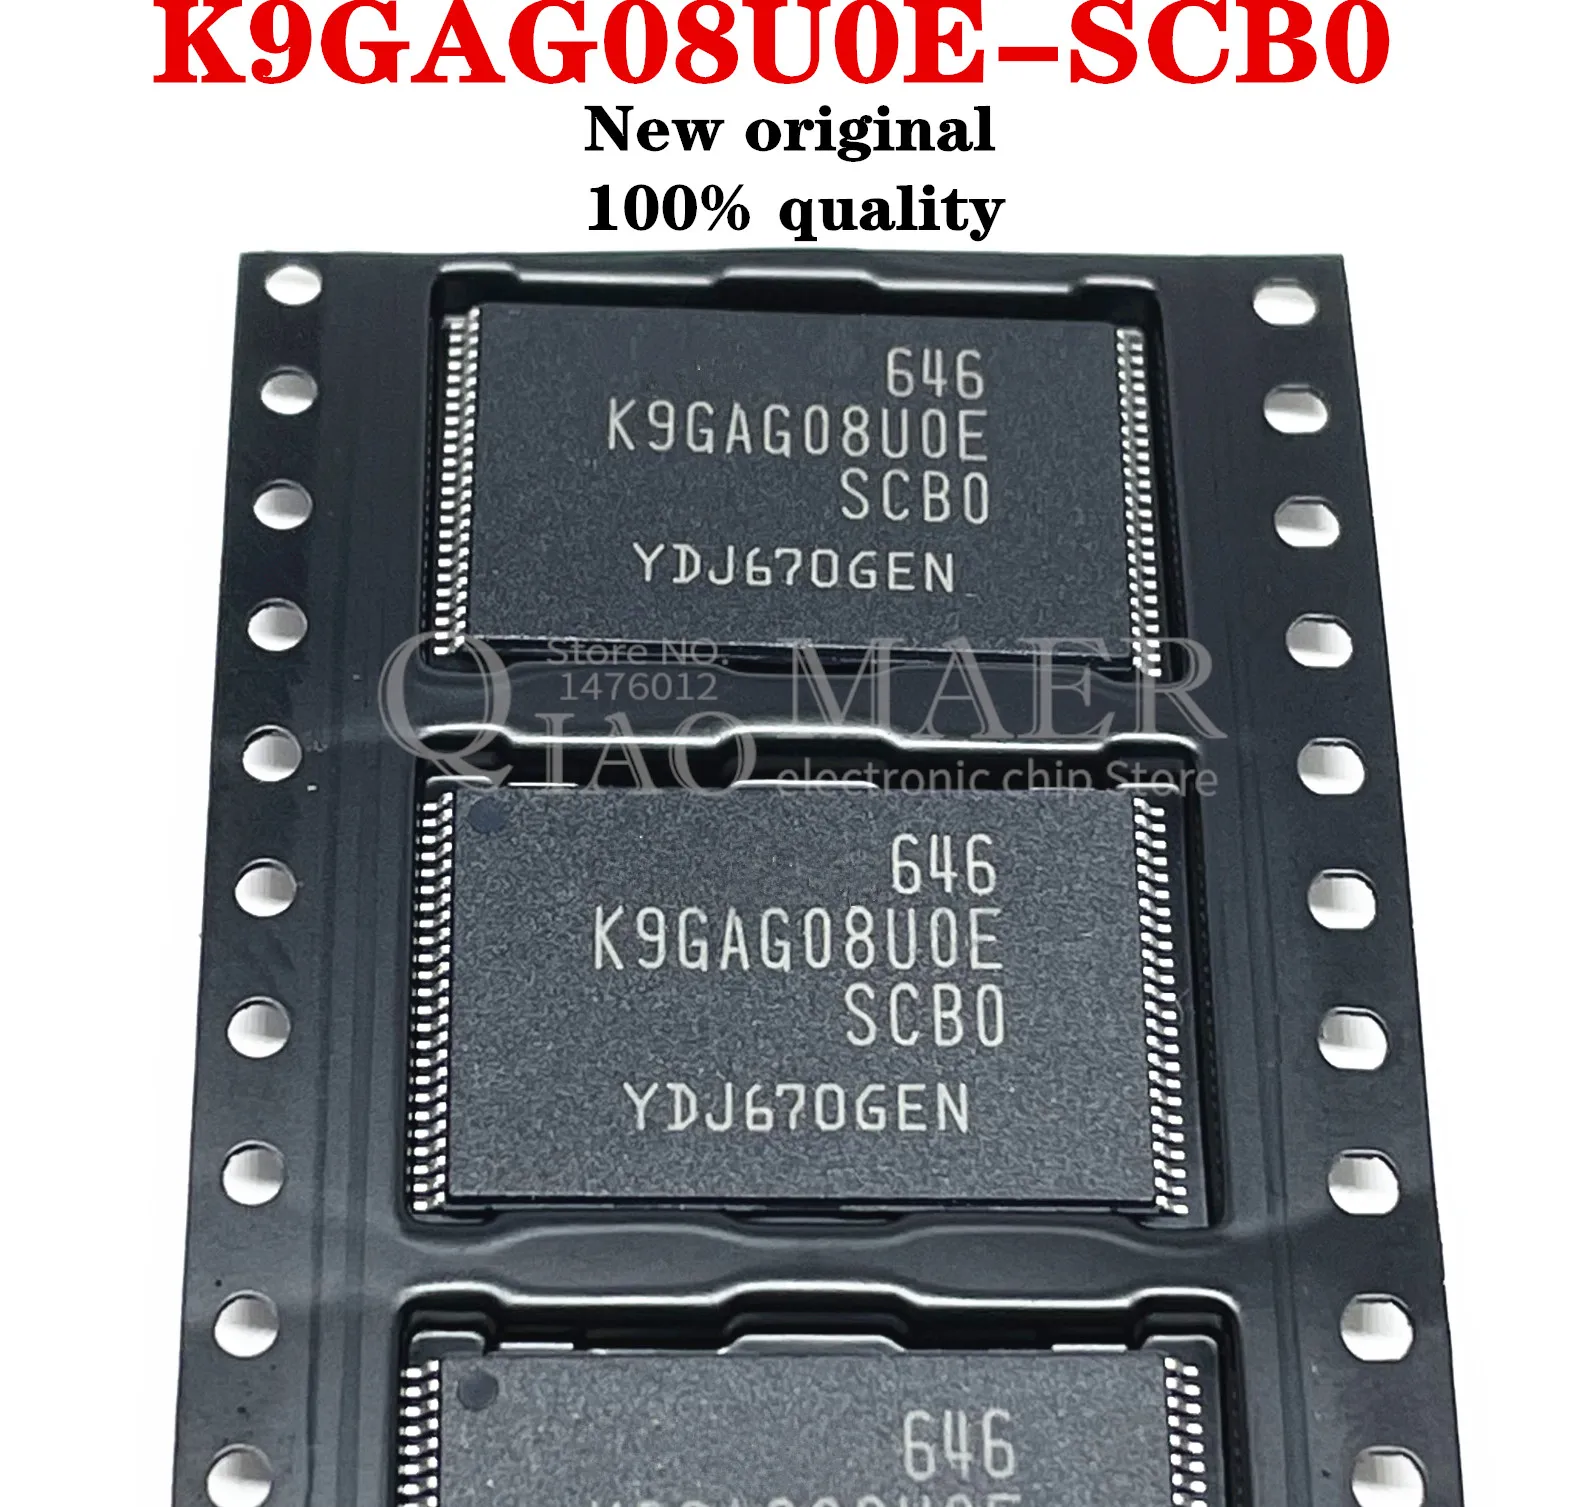 

5-10PCS New Original K9GAG08U0E SCB0 K9GAG08UOE SCBO TSOP-48 K9GAG08U0E-SCB0 K9GAG08UOE-SCBO In Stock